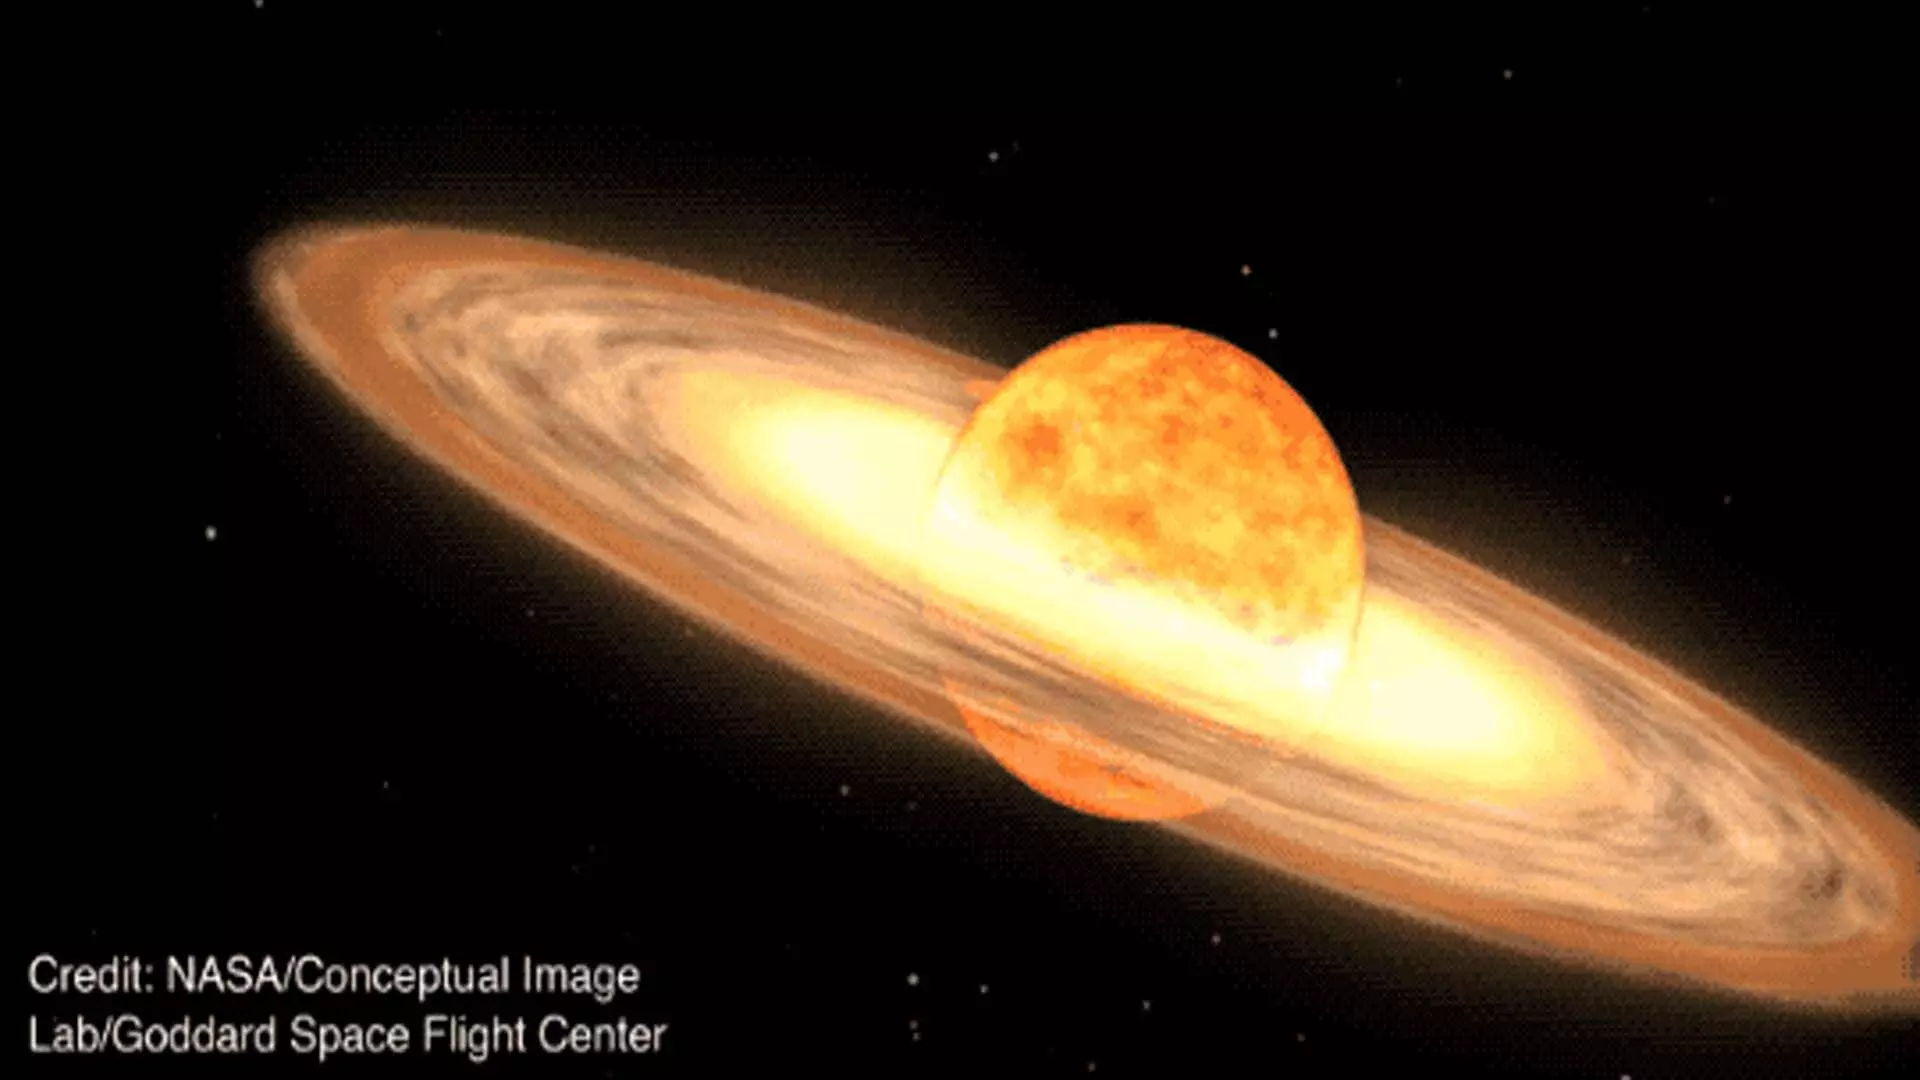 SCIENCE: किसी भी रात आसमान में एक नया तारा दिखाई देगा